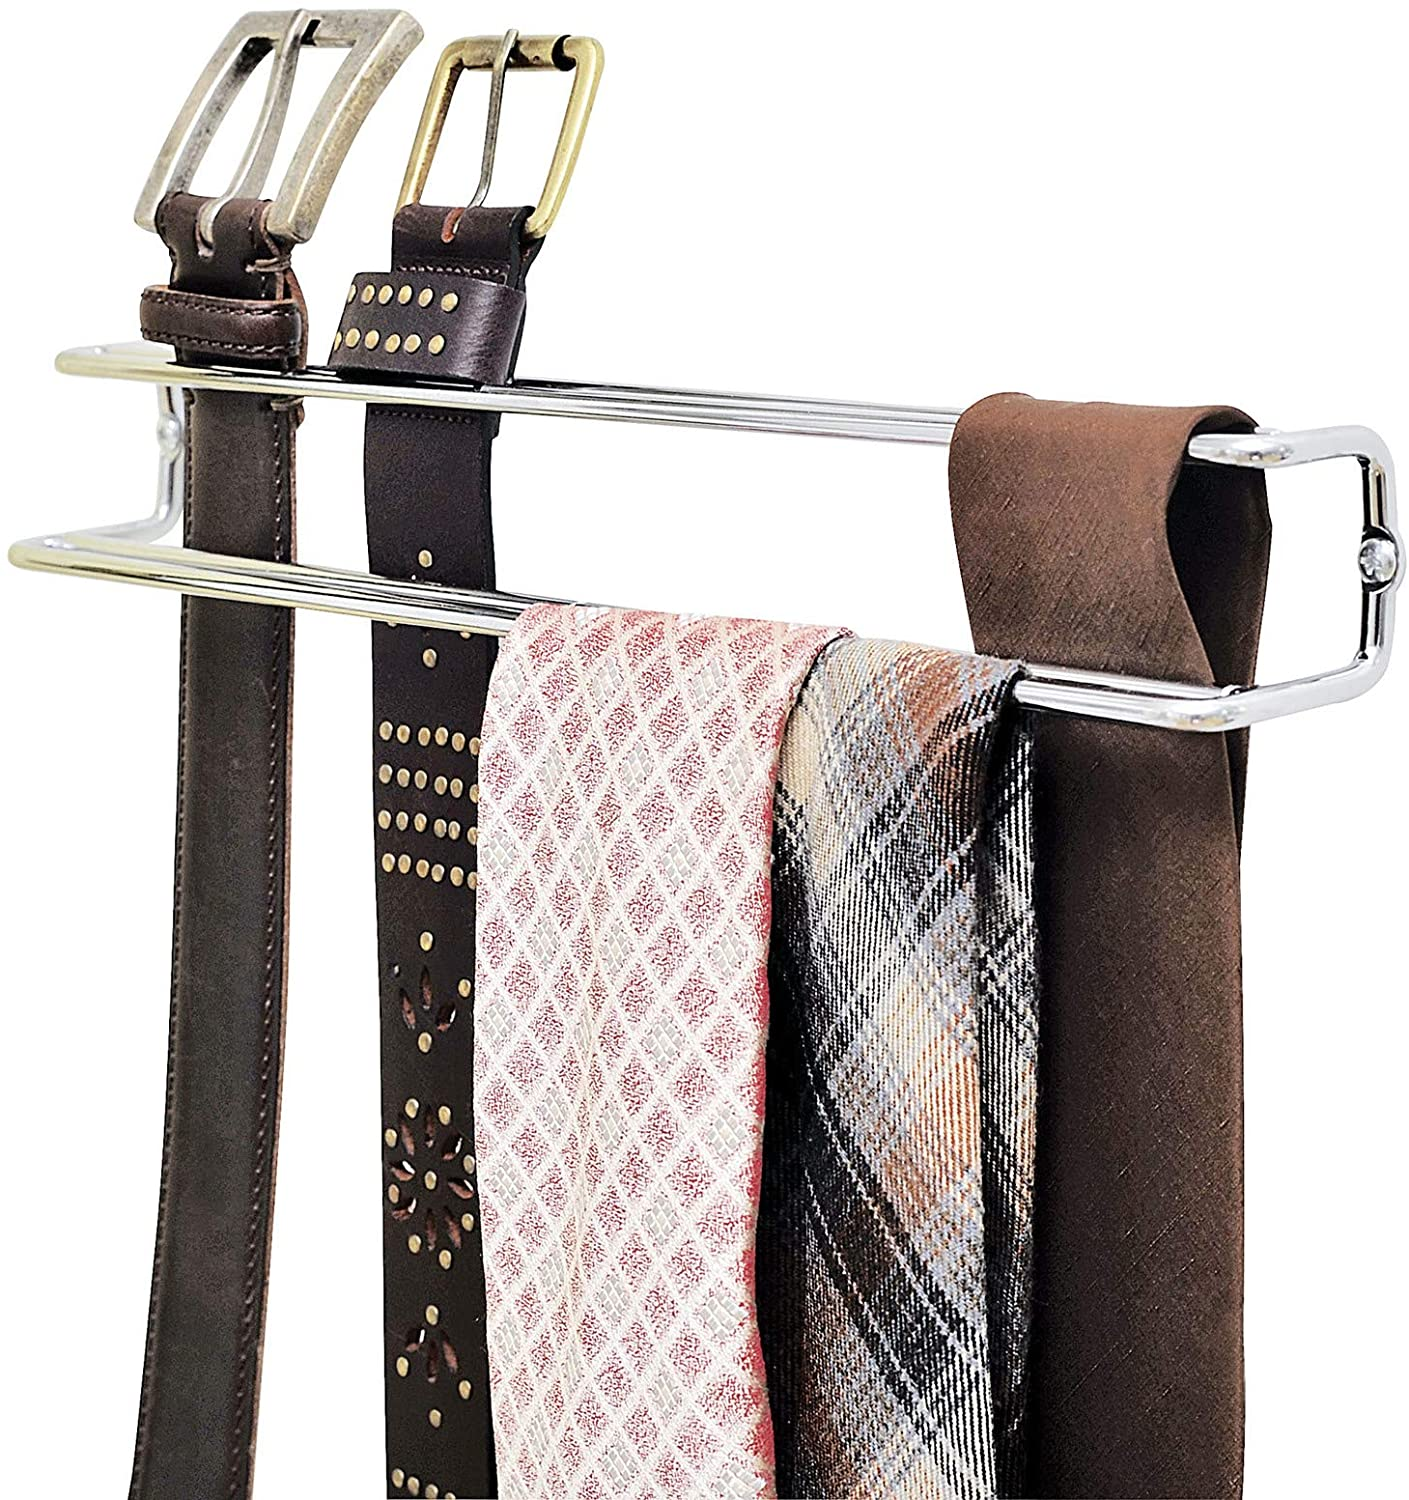 Halter für Krawatten und Gürtel, Krawattenhalter zur Befestigung im Kleiderschrank, verchromtes Metall, 36 x 5 x 4,5 cm